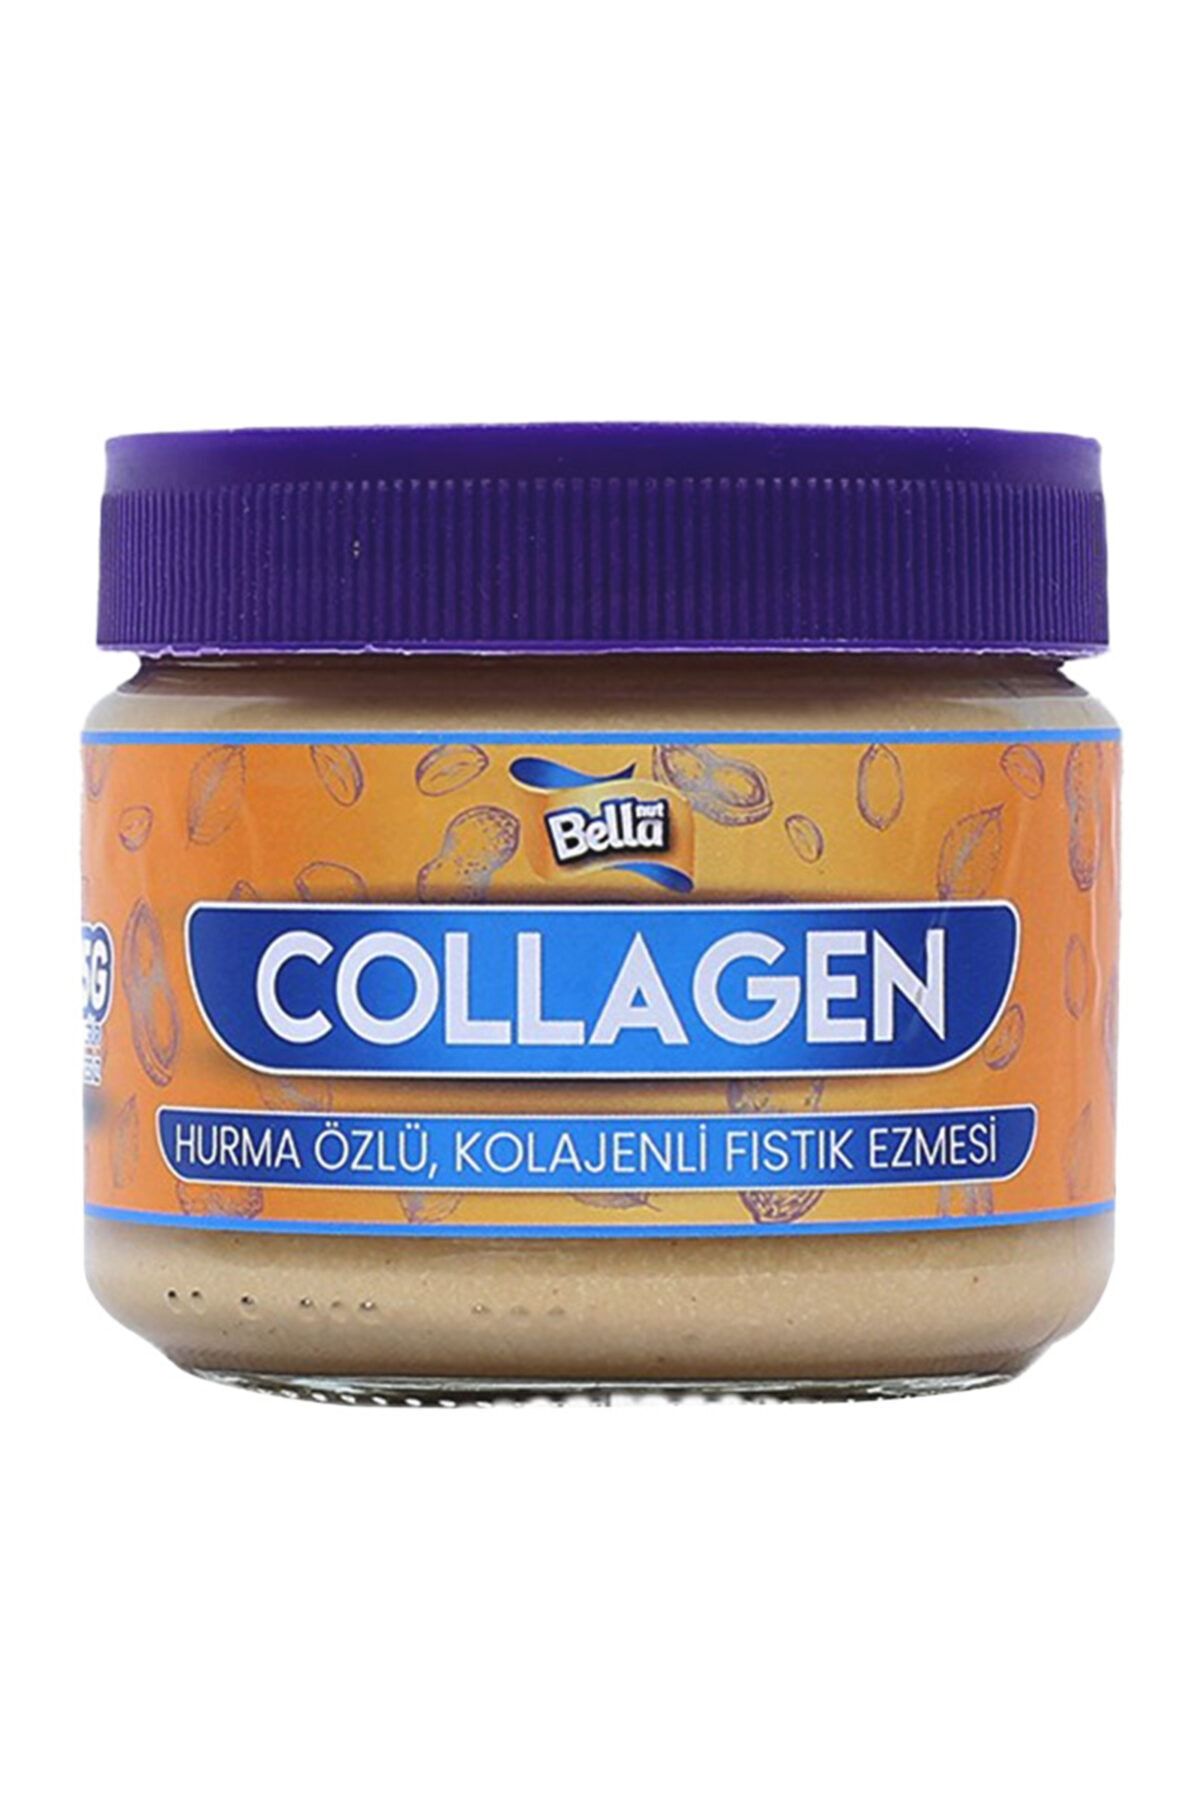 Bellanut Collagen Fıstık Ezmesi 225 Gr - Hurma